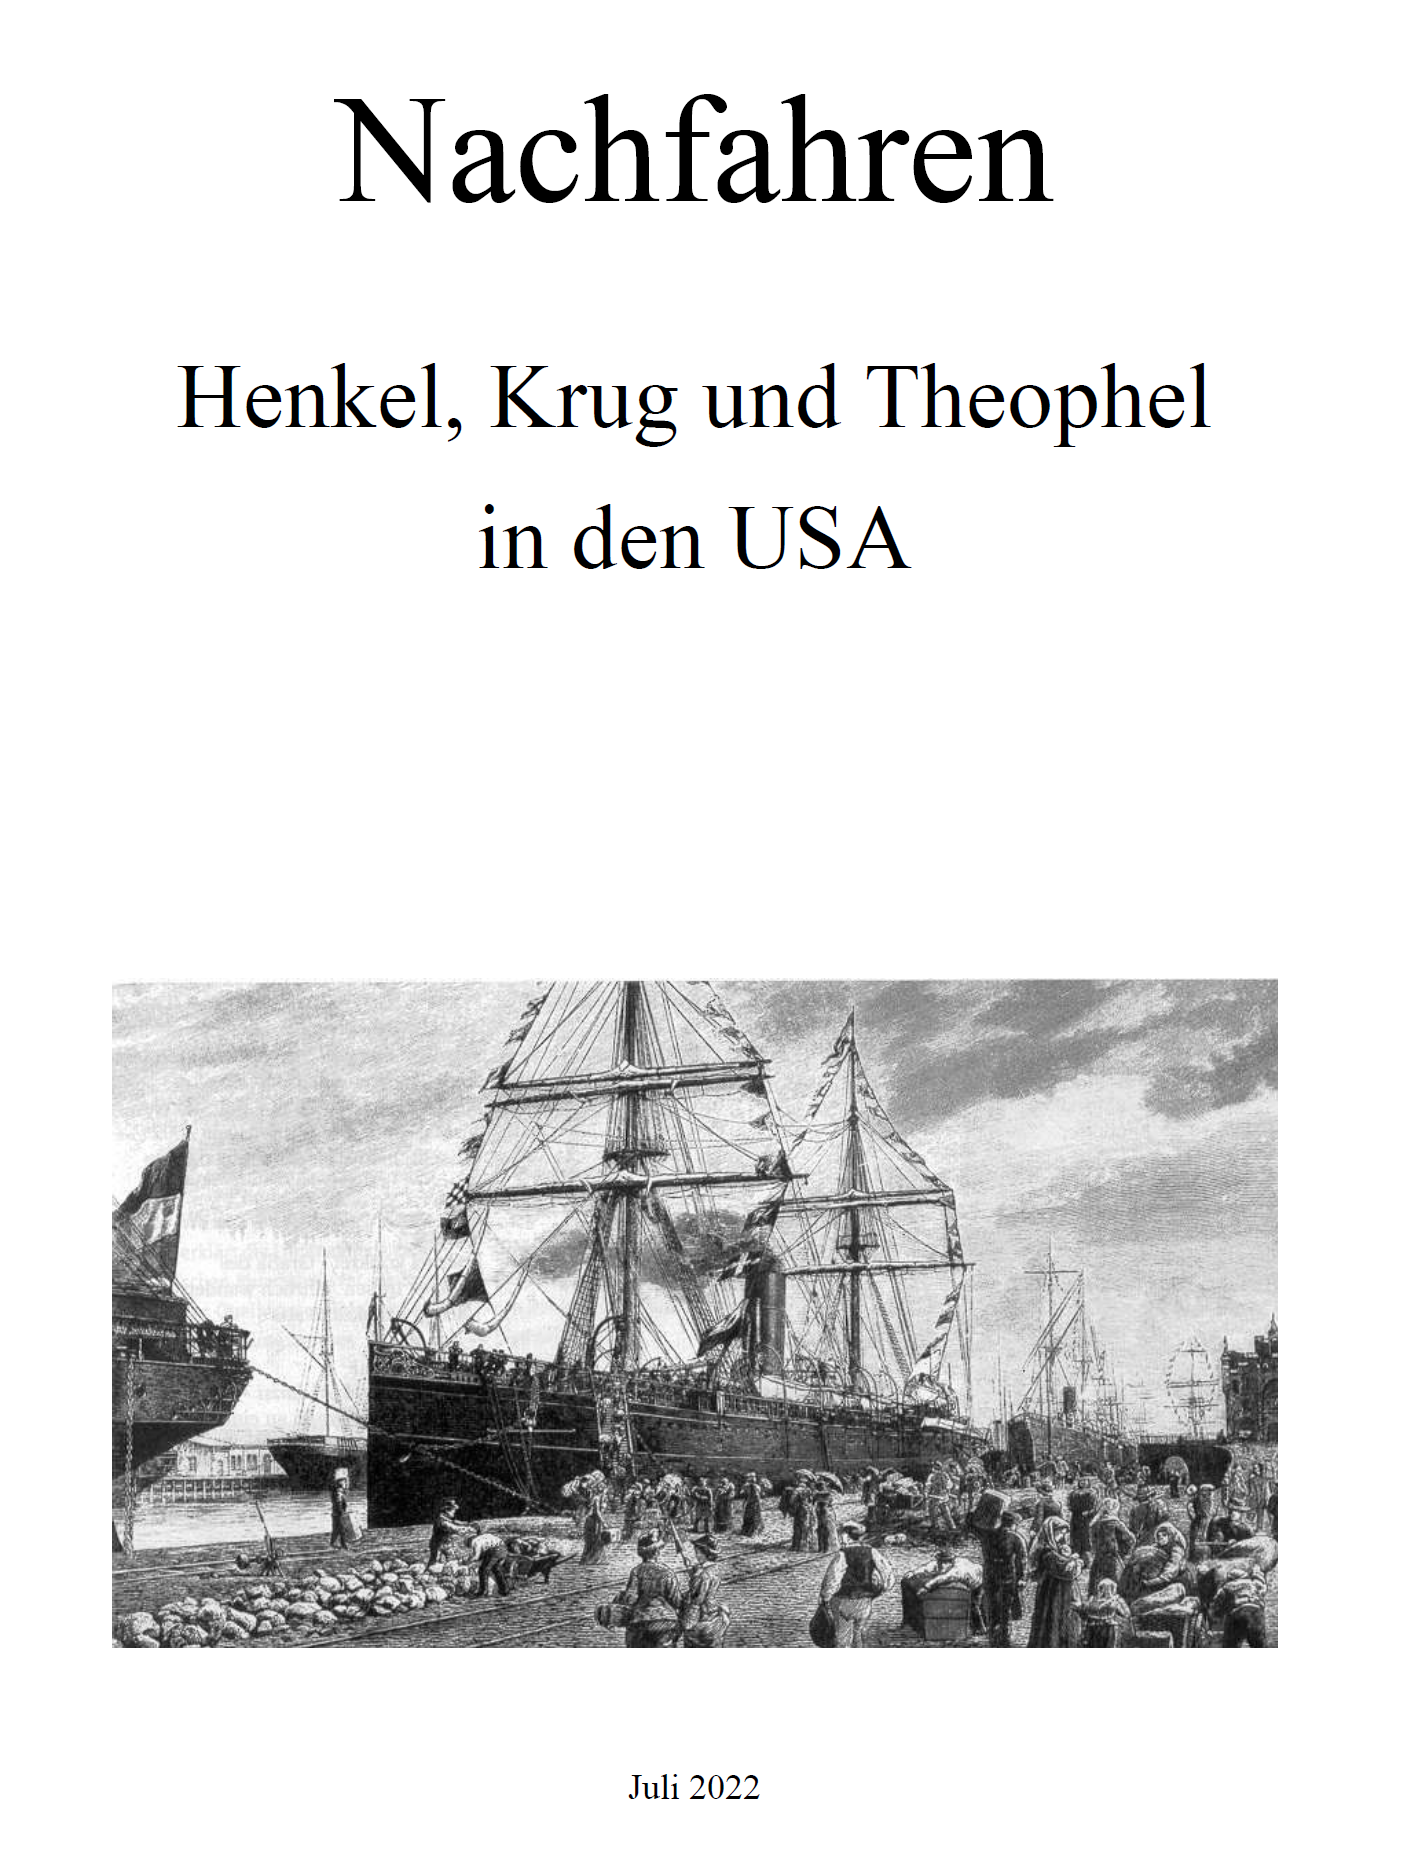 Henkel (2022), Nachfahren der Familien Henkel, Krug und Theophel in den USA